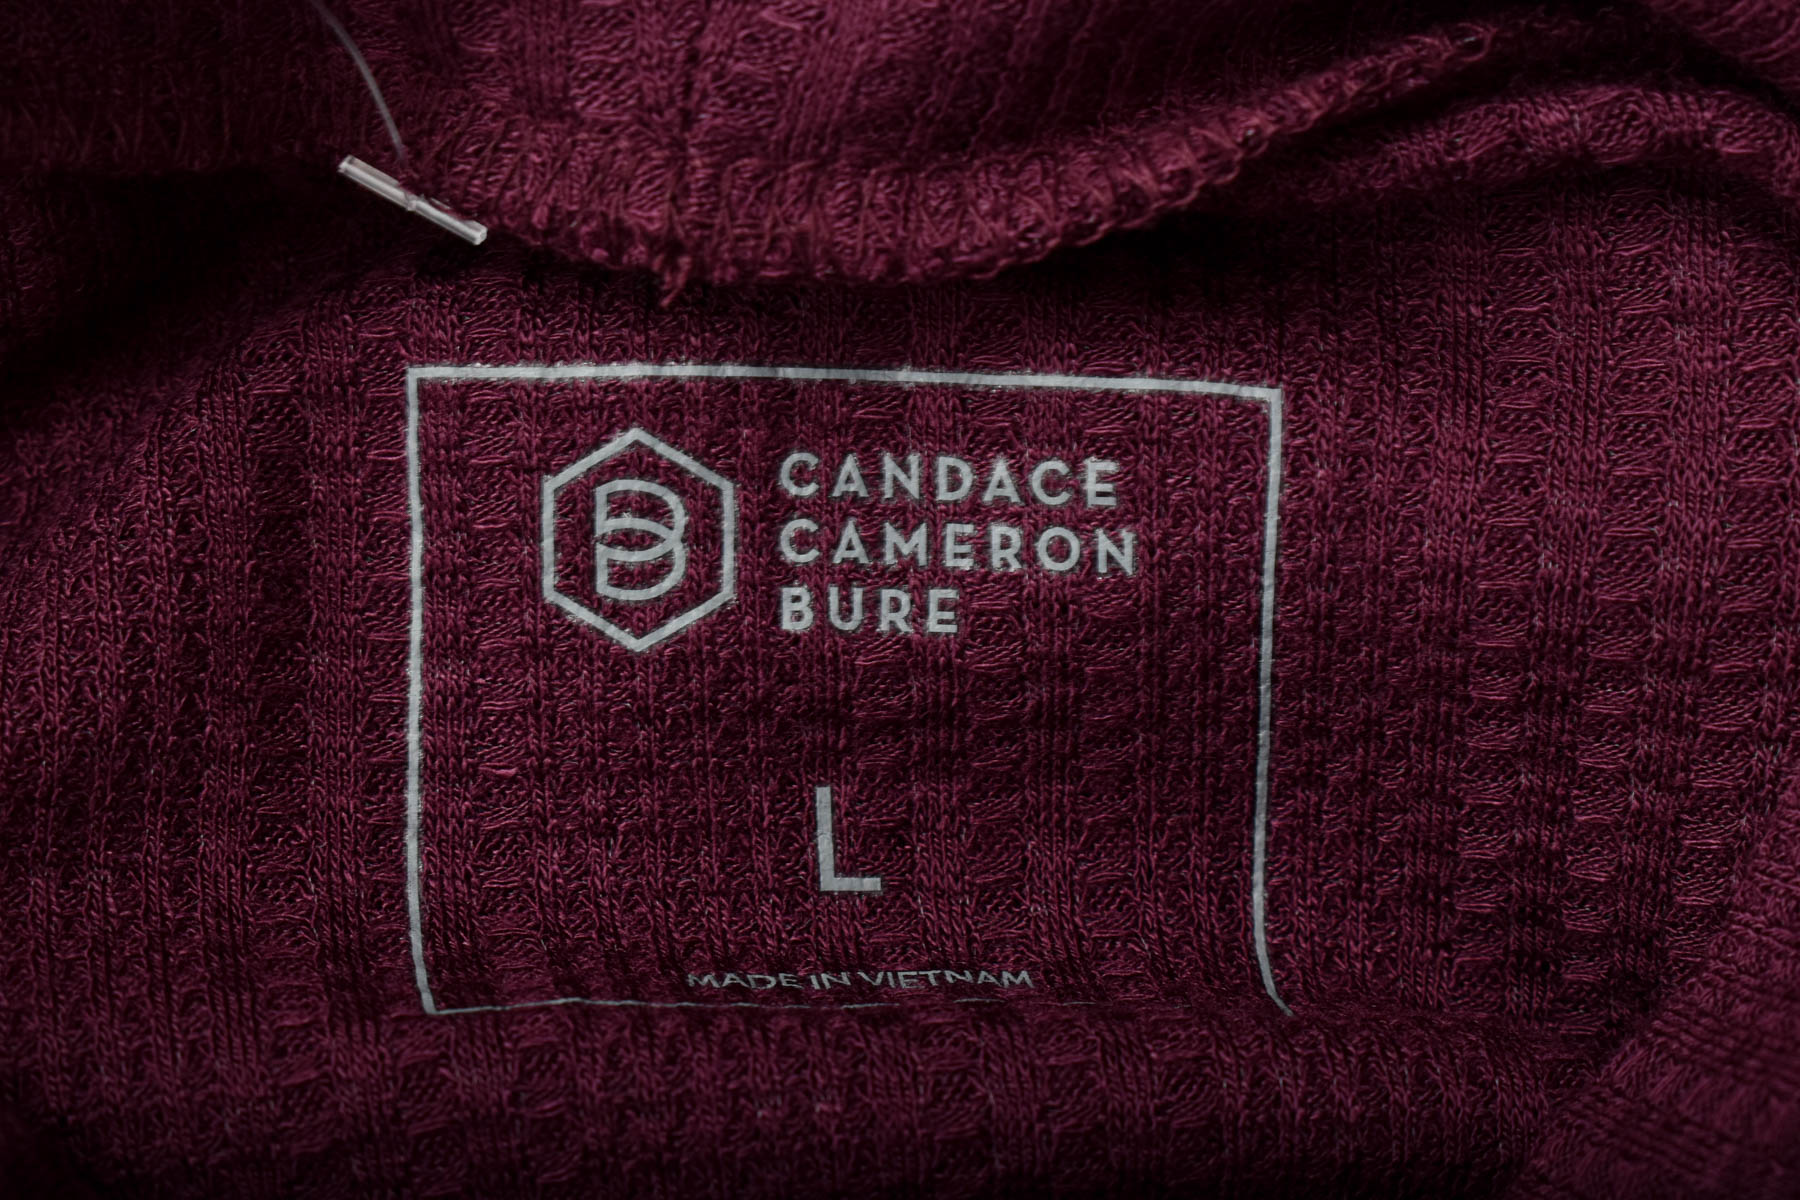 Γυναικεία μπλούζα - Candace Cameron Bure - 2